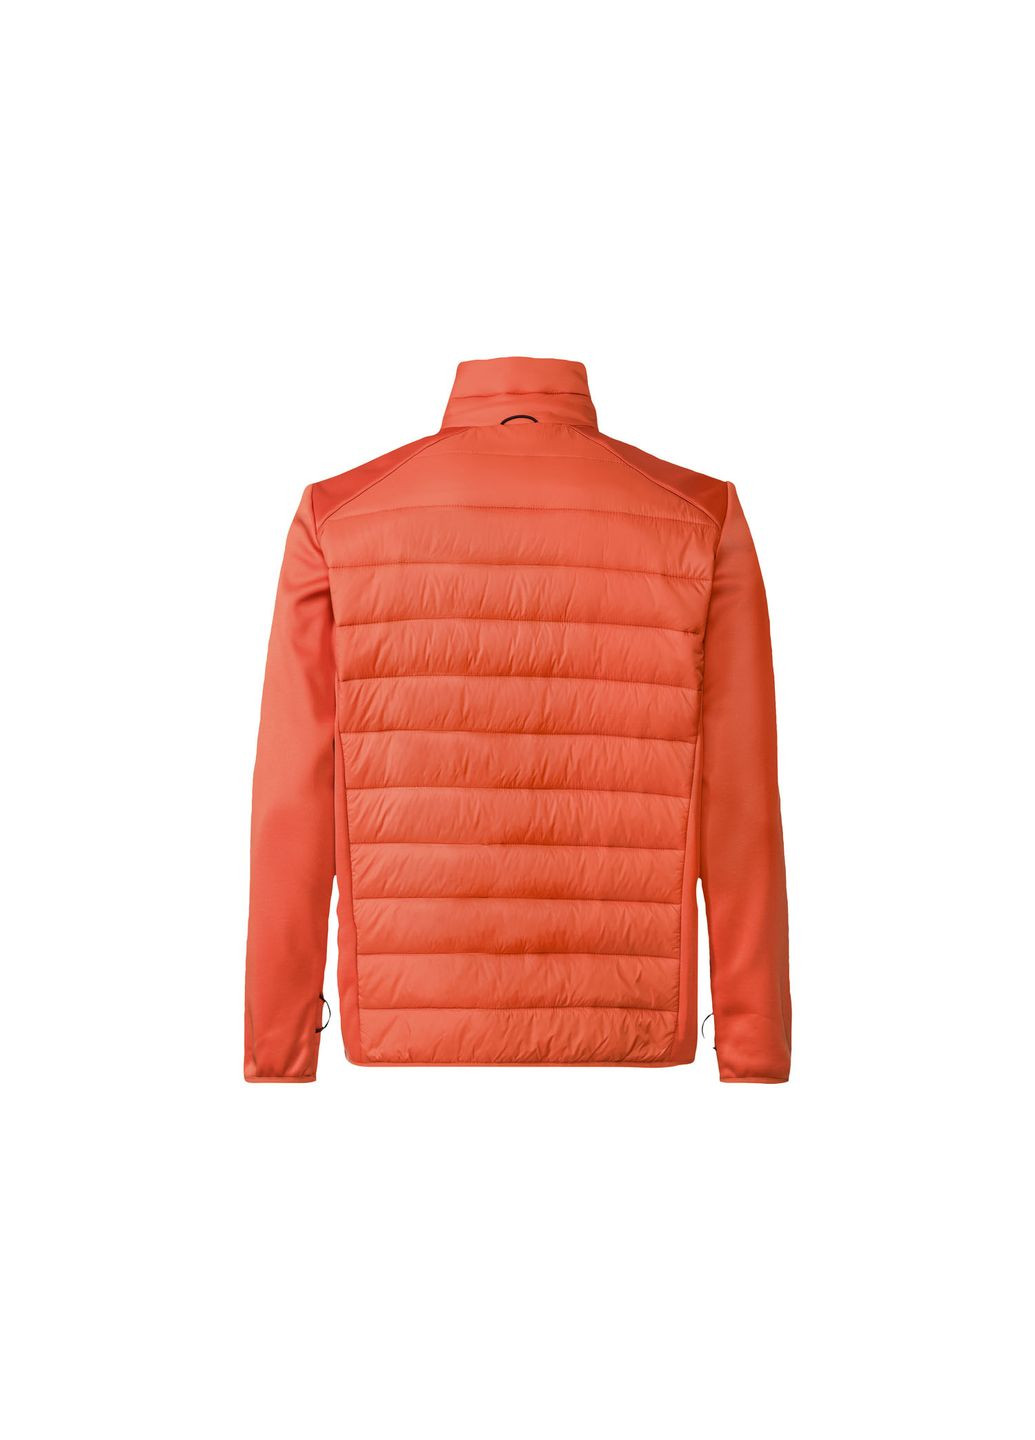 Оранжевая демисезонная куртка демисезонная комбинированная softshell / софтшелл для мужчины 498774 ROCKTRAIL